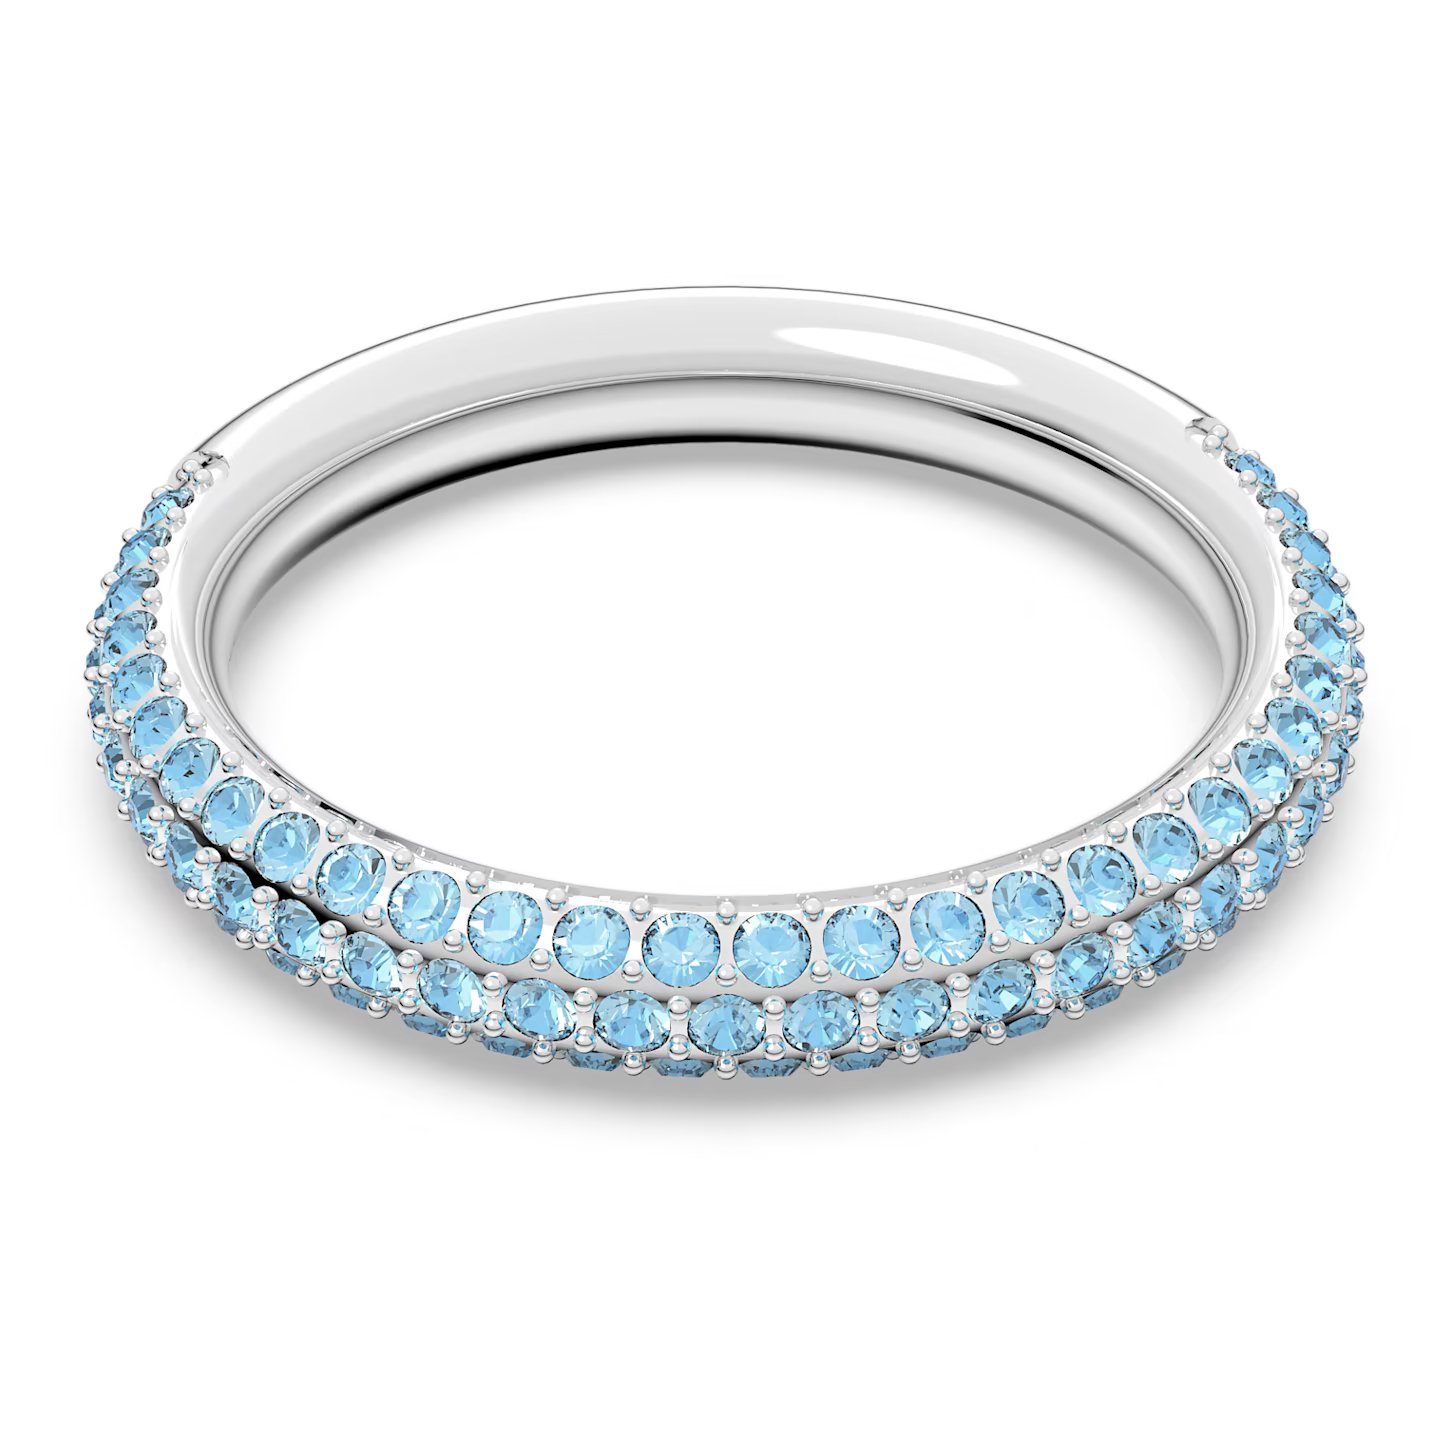 Swarovski Nádherný prsten s modrými krystaly Swarovski Stone 5642903 50 mm